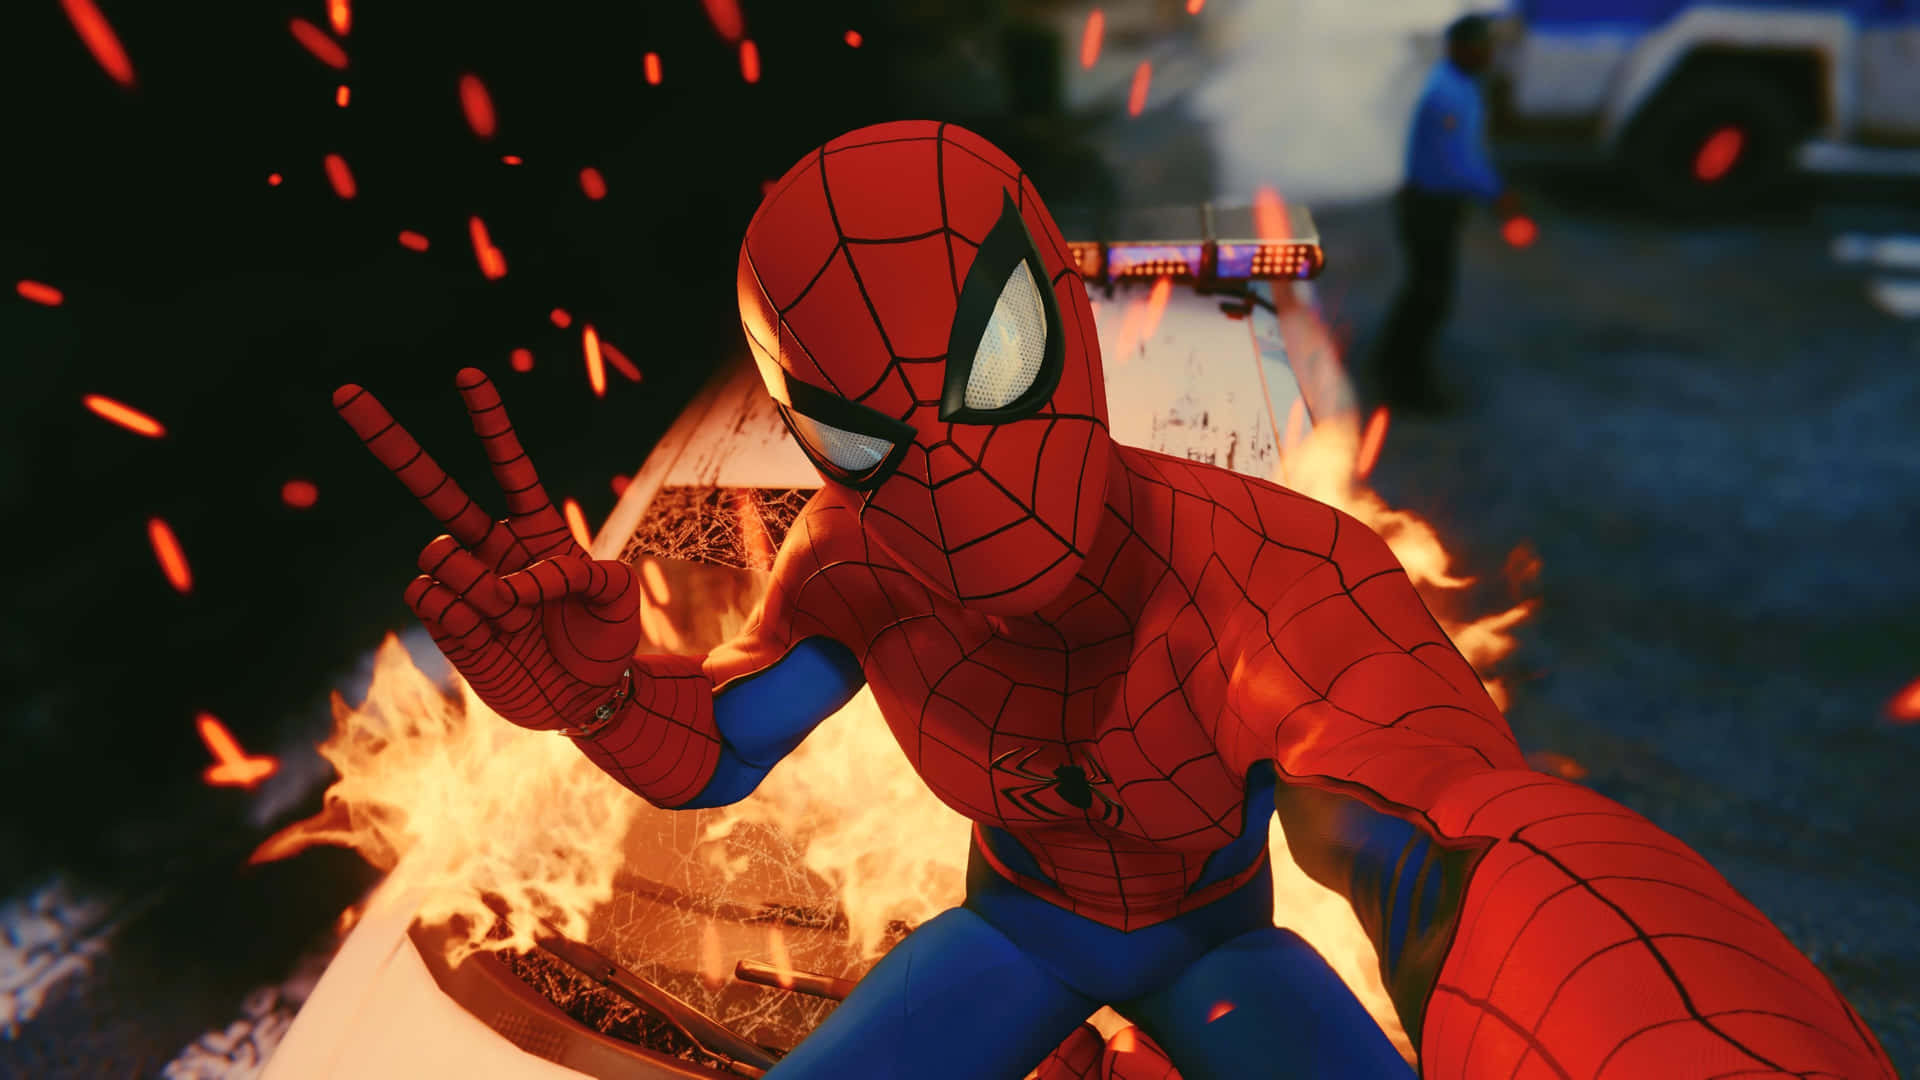 Spiderman Ps4 4k Hintergrund Mit Friedlicher Pose Und Feuerexplosion. Wallpaper